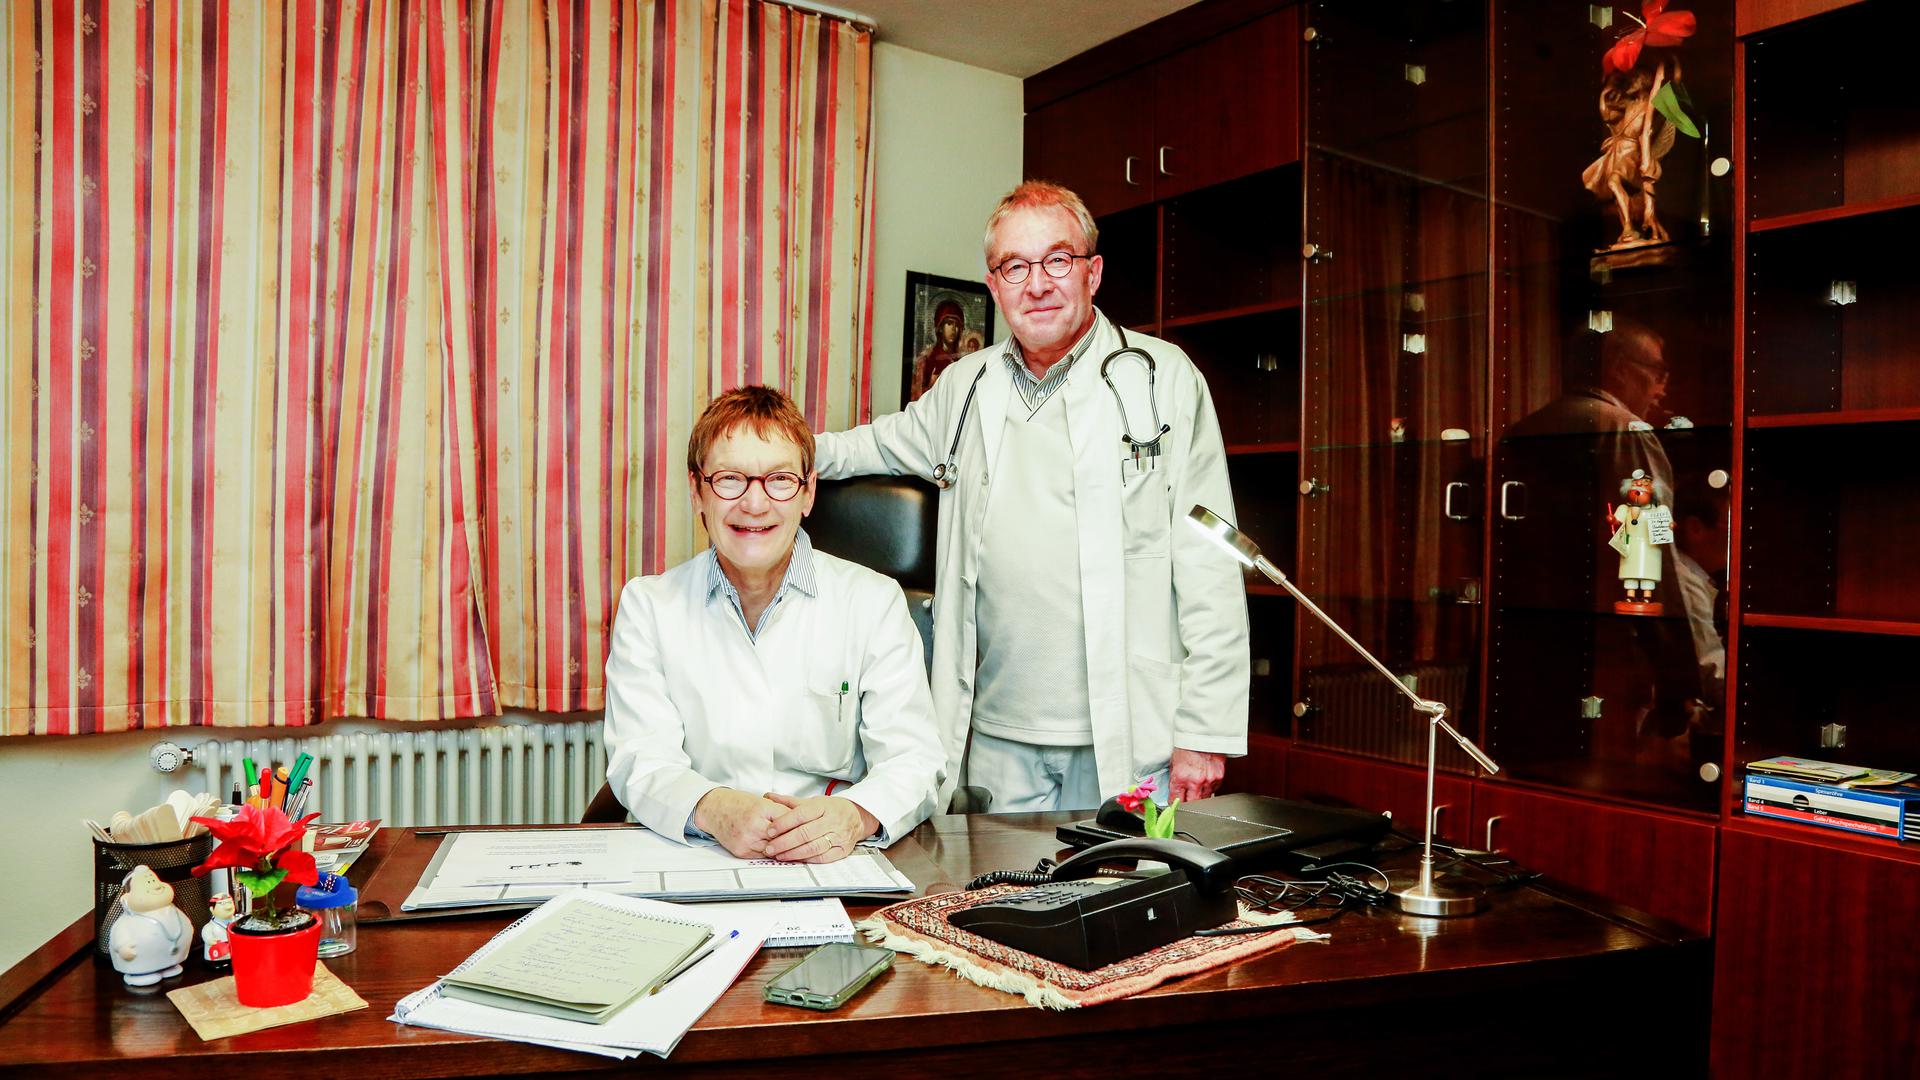 Vertrautes Team: Renate und Christoph Haag haben ihre Praxis in Flehingen nach 40 Berufsjahren in jüngere Hände gelegt.